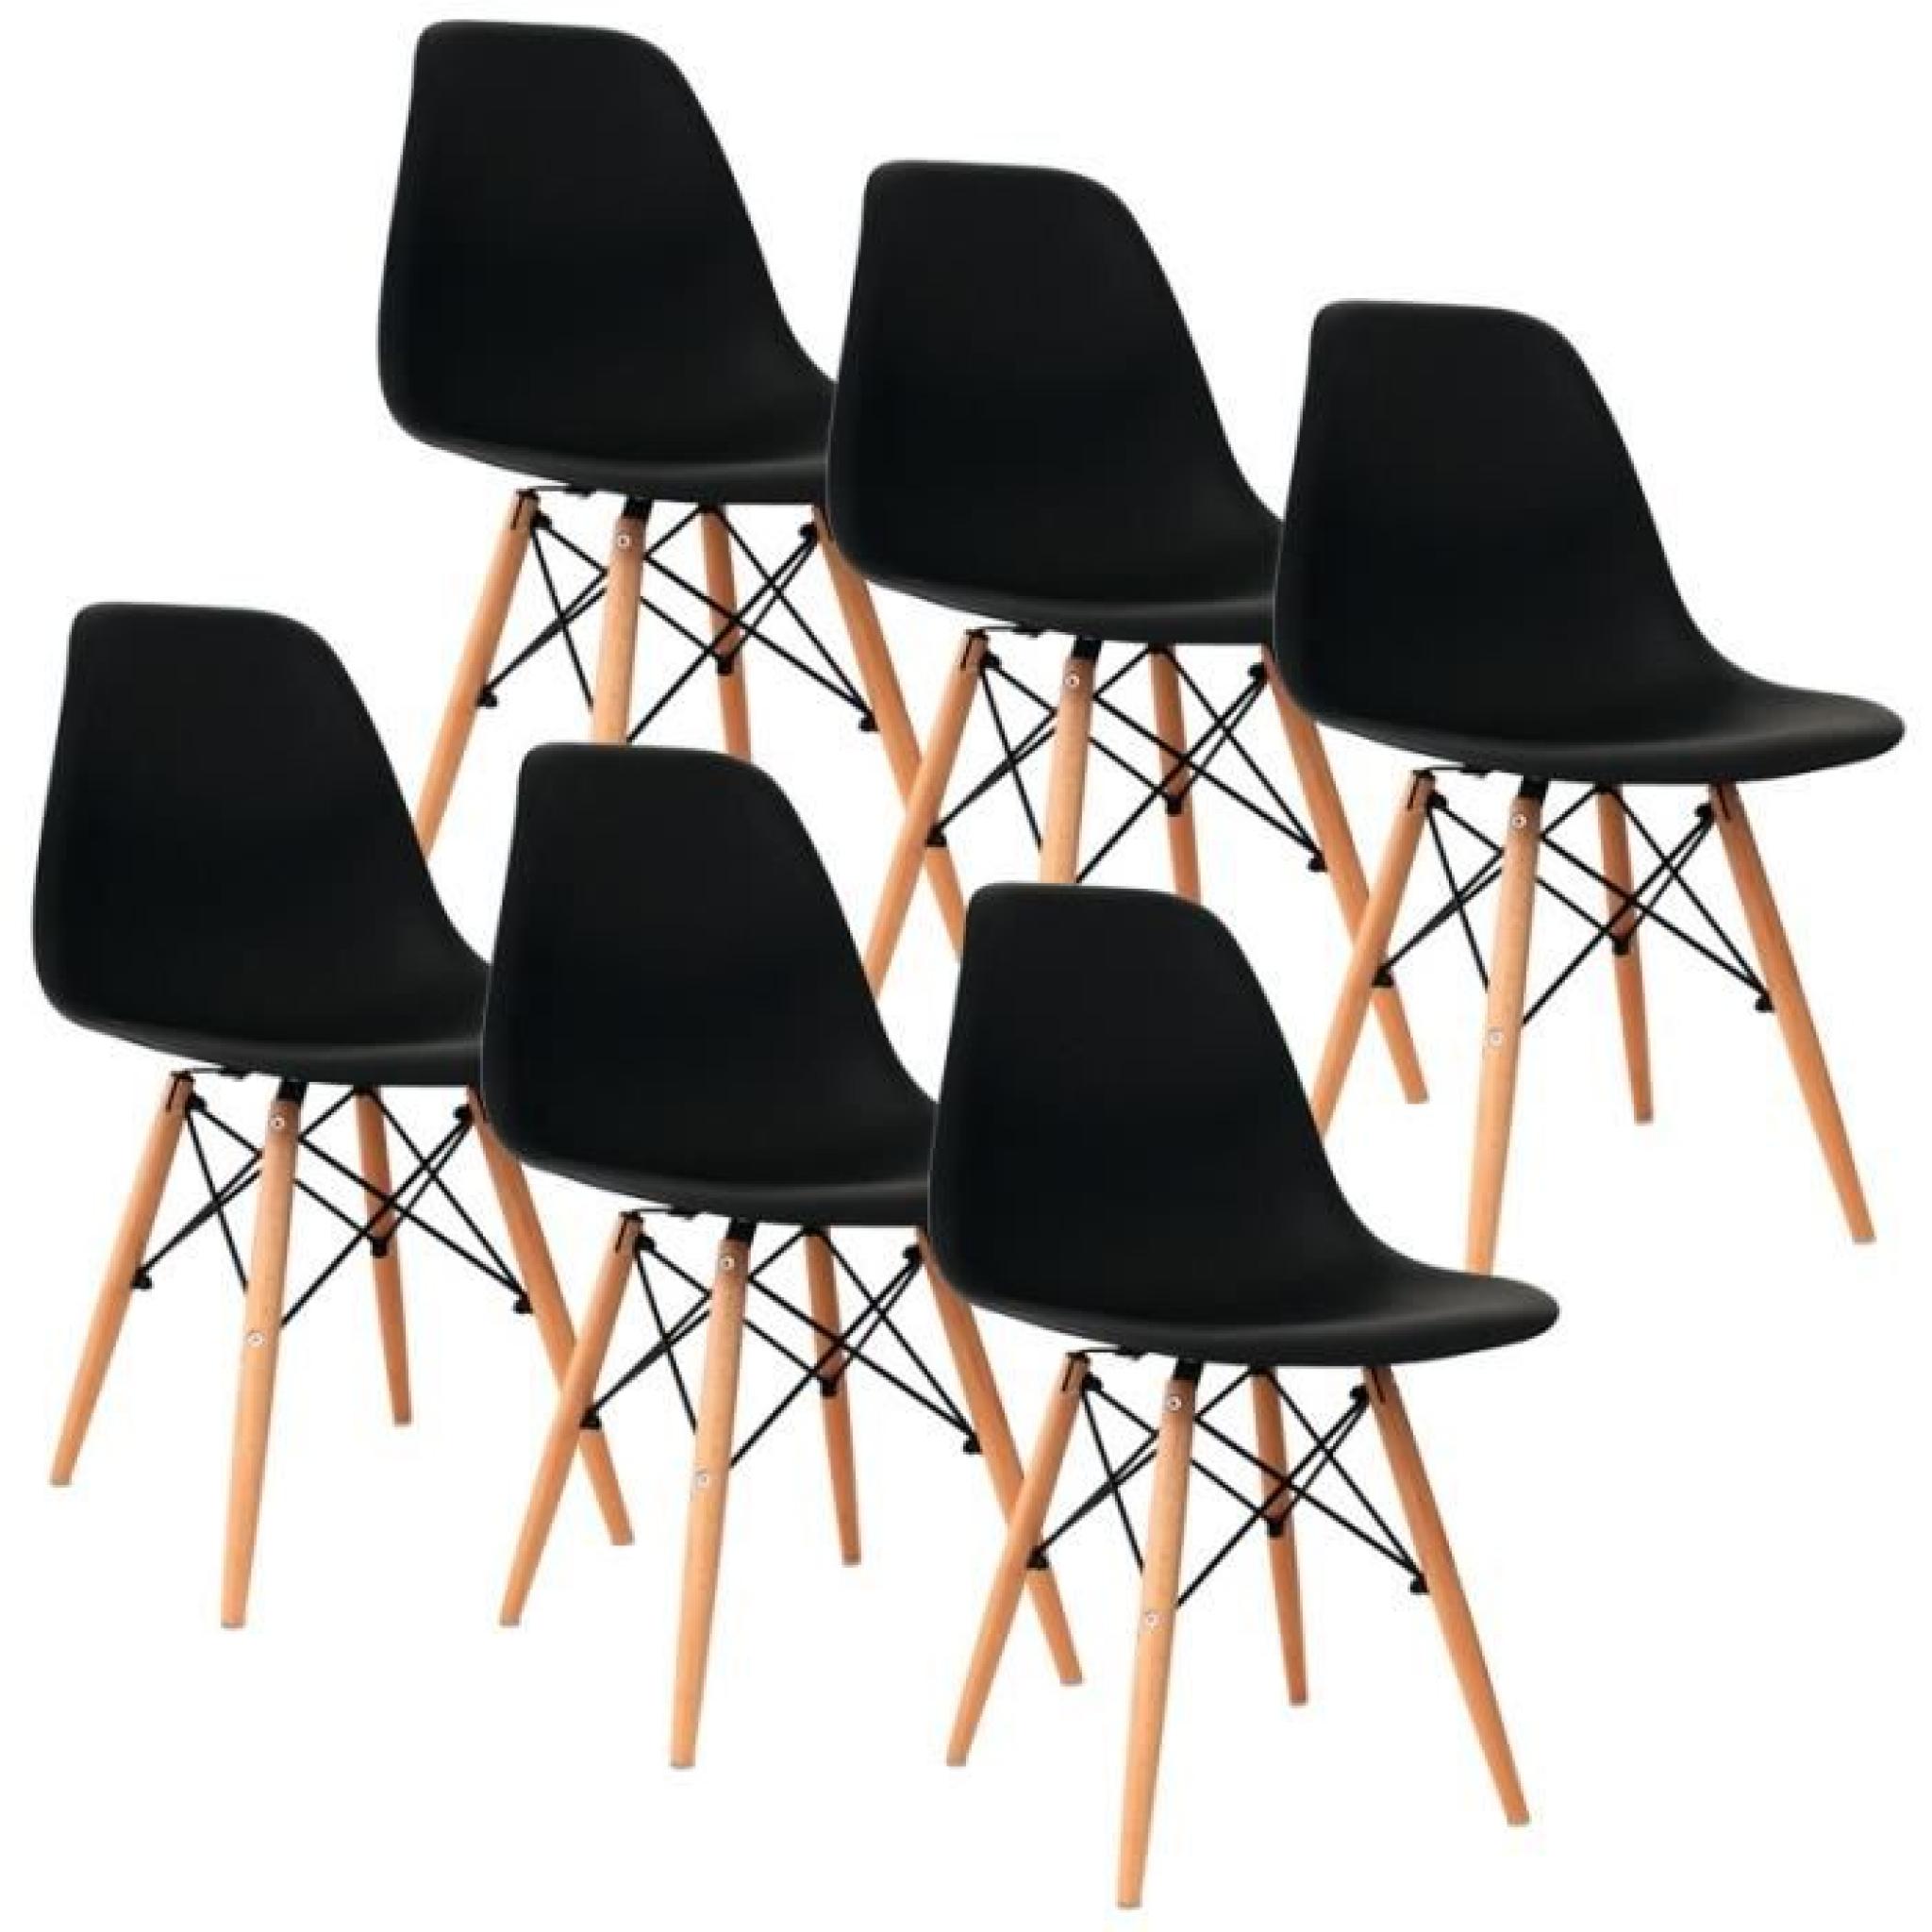 Chaise design noir pieds en bois RETRO lot de 6